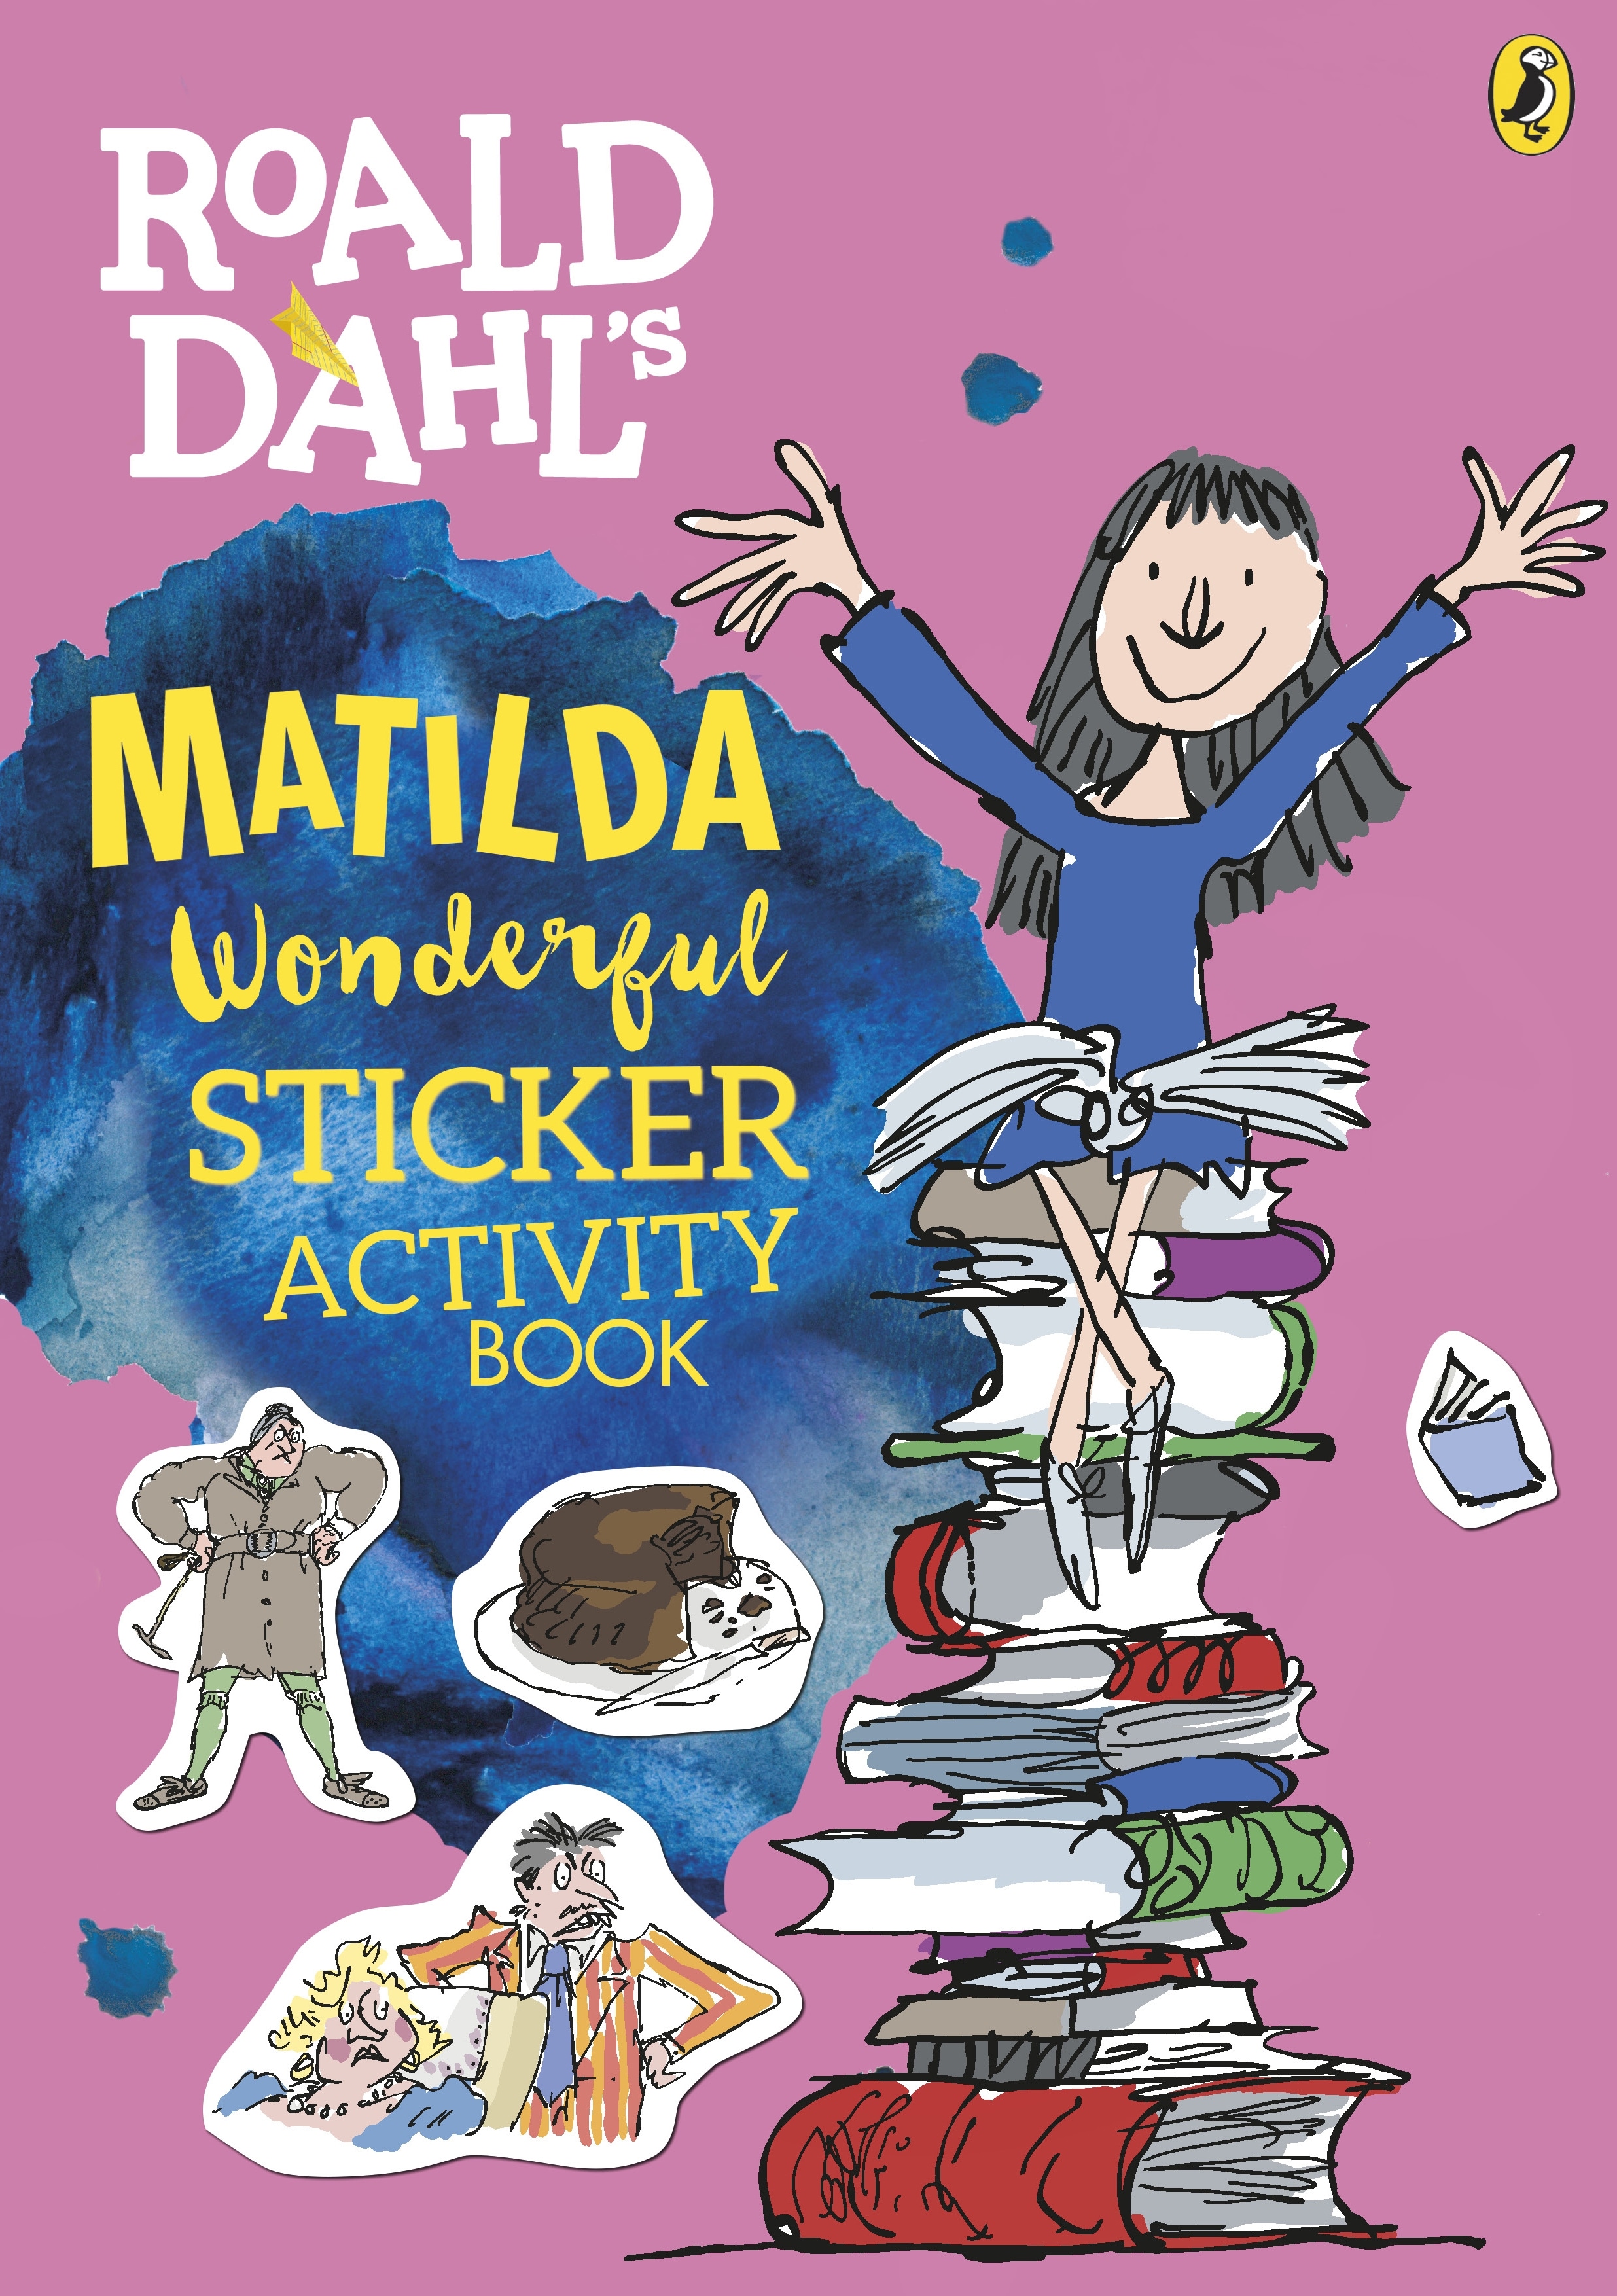 Книга «Roald Dahl's Matilda Wonderful Sticker Activity Book» — 18 мая 2017 г.